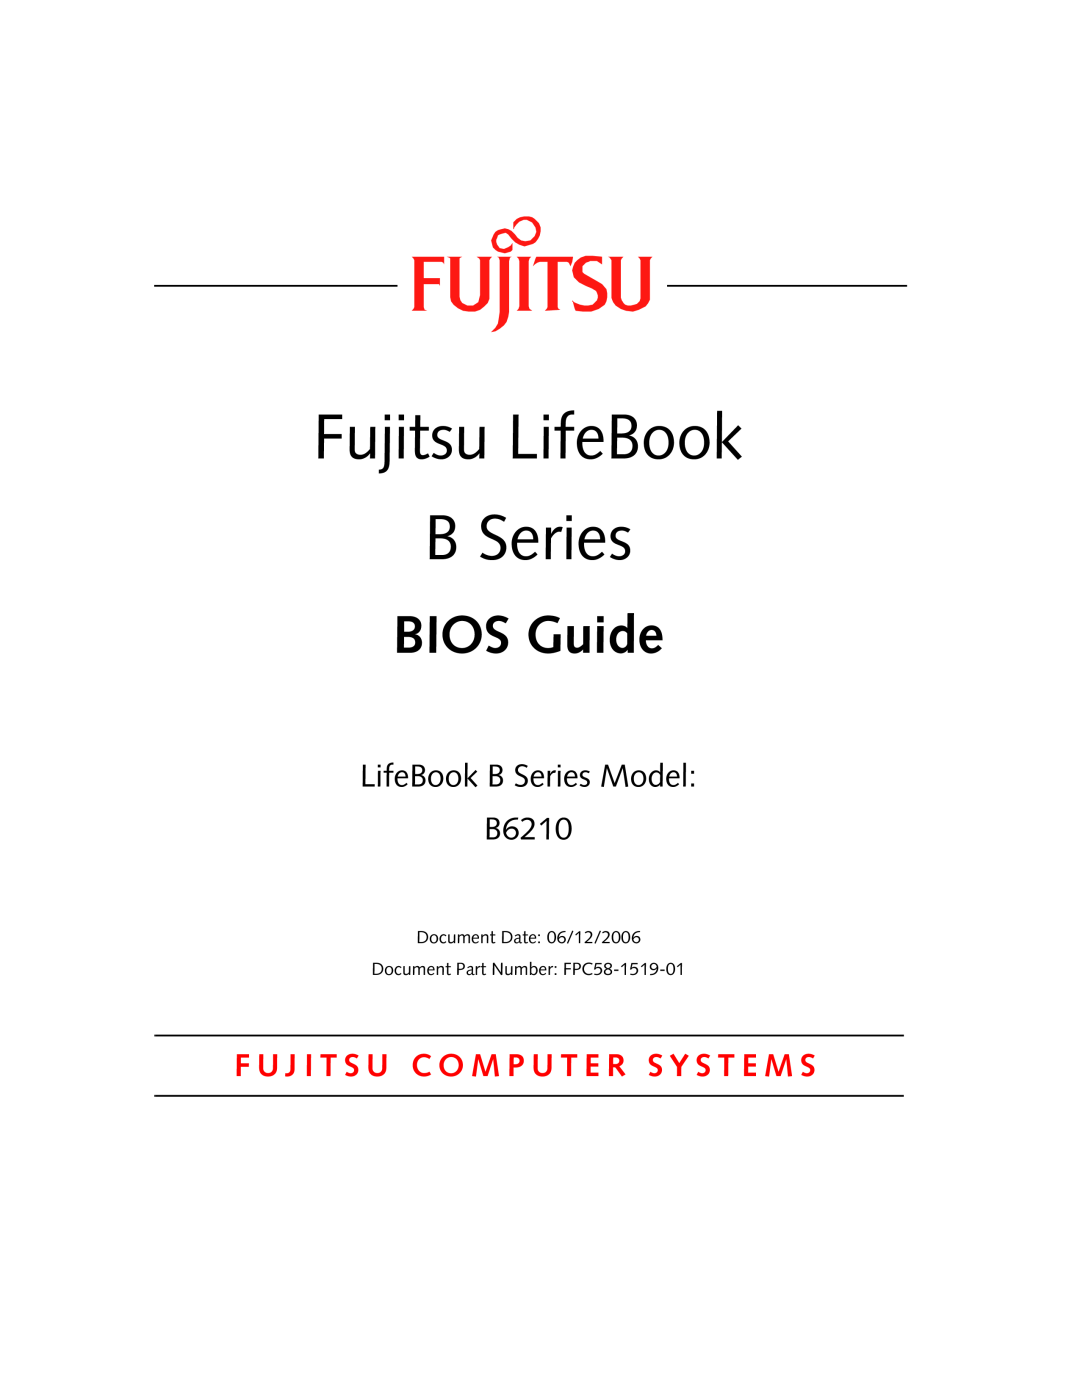 Fujitsu manual Fujitsu LifeBook B Series, BIOS Guide, LifeBook B Series Model B6210 